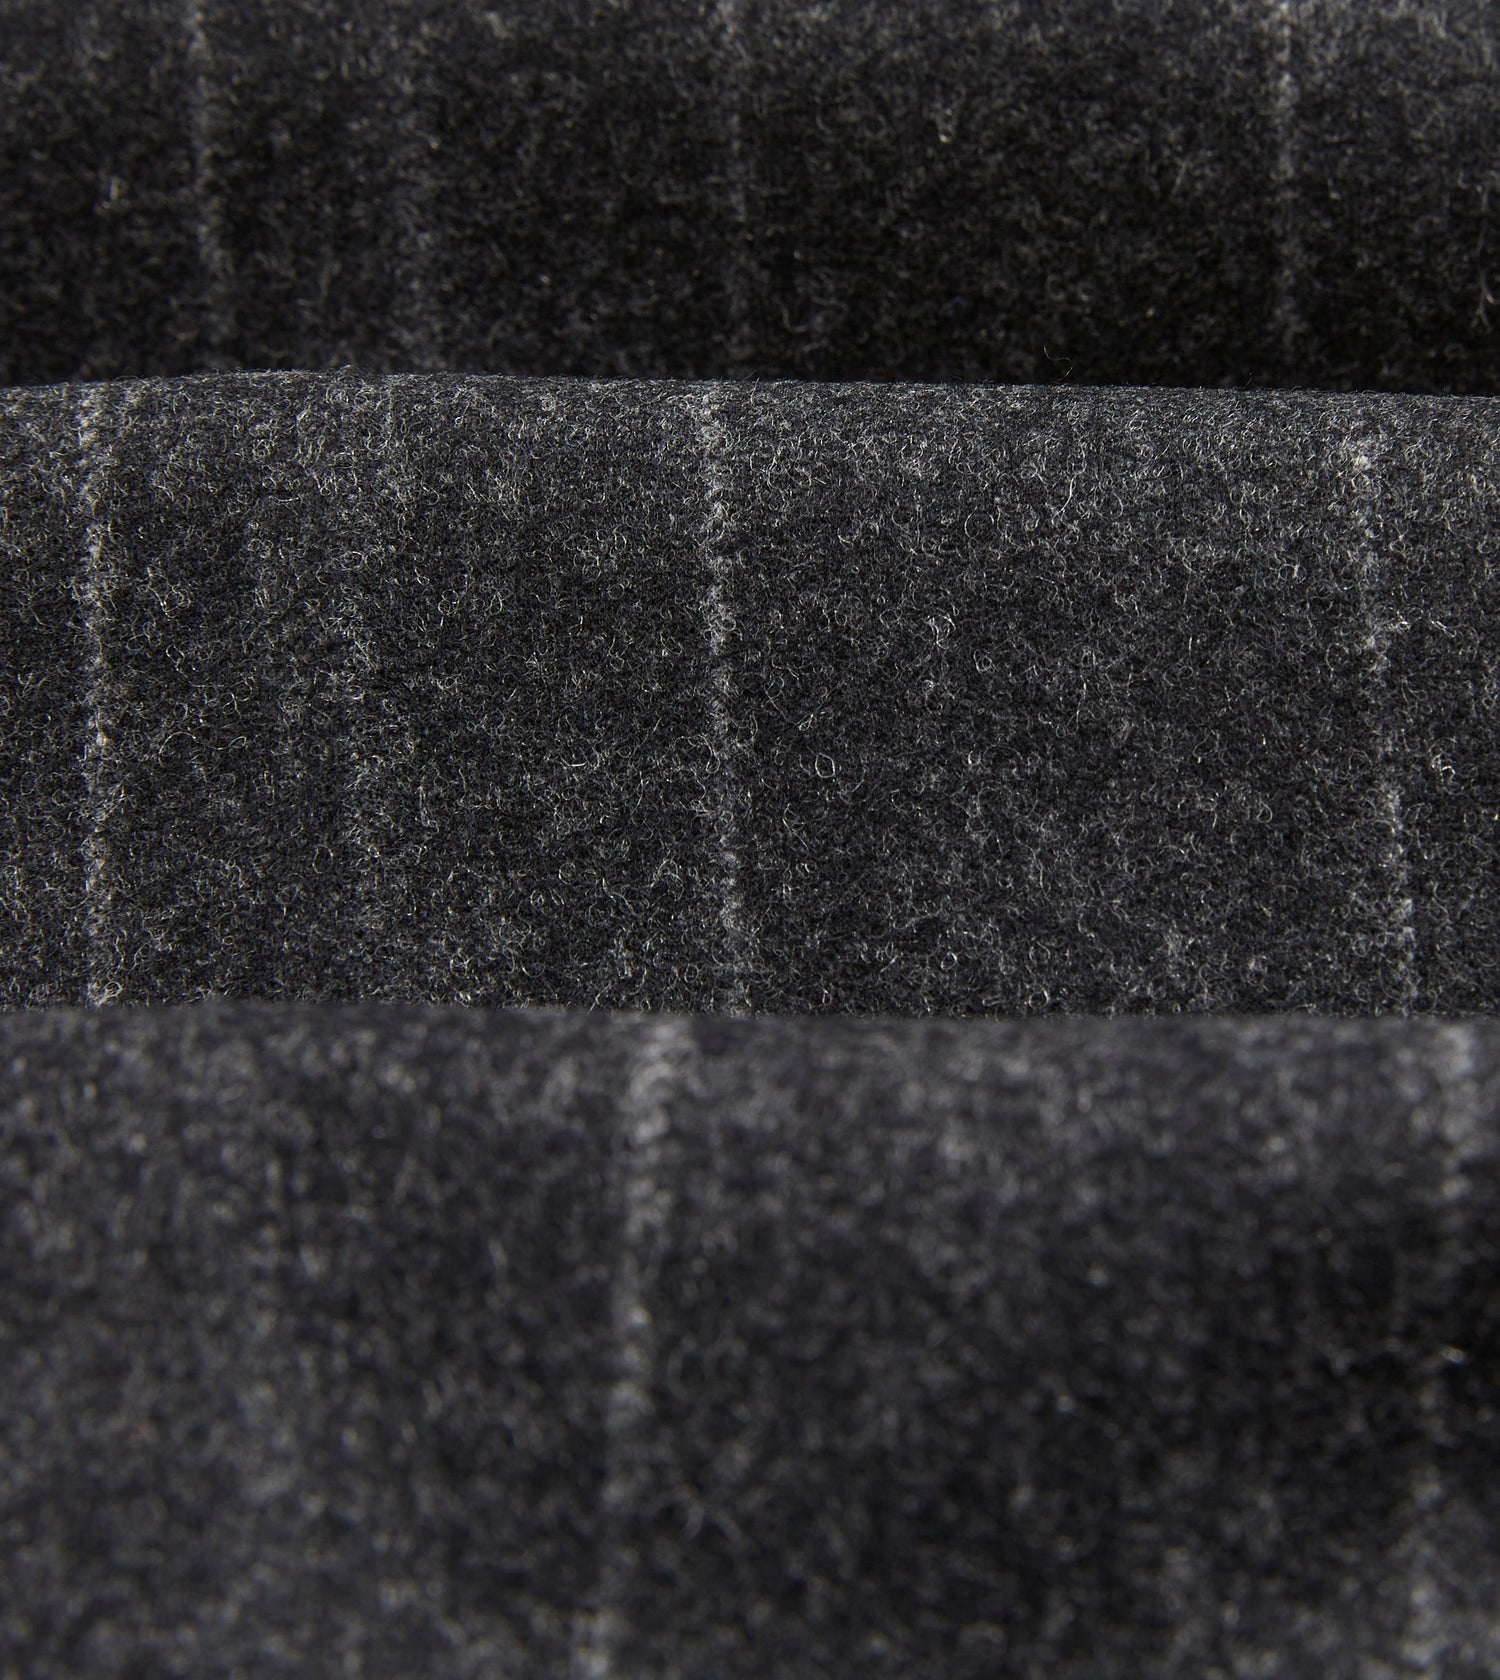 Grey Chalkstripe Wool Flannel Flat Front Trouser